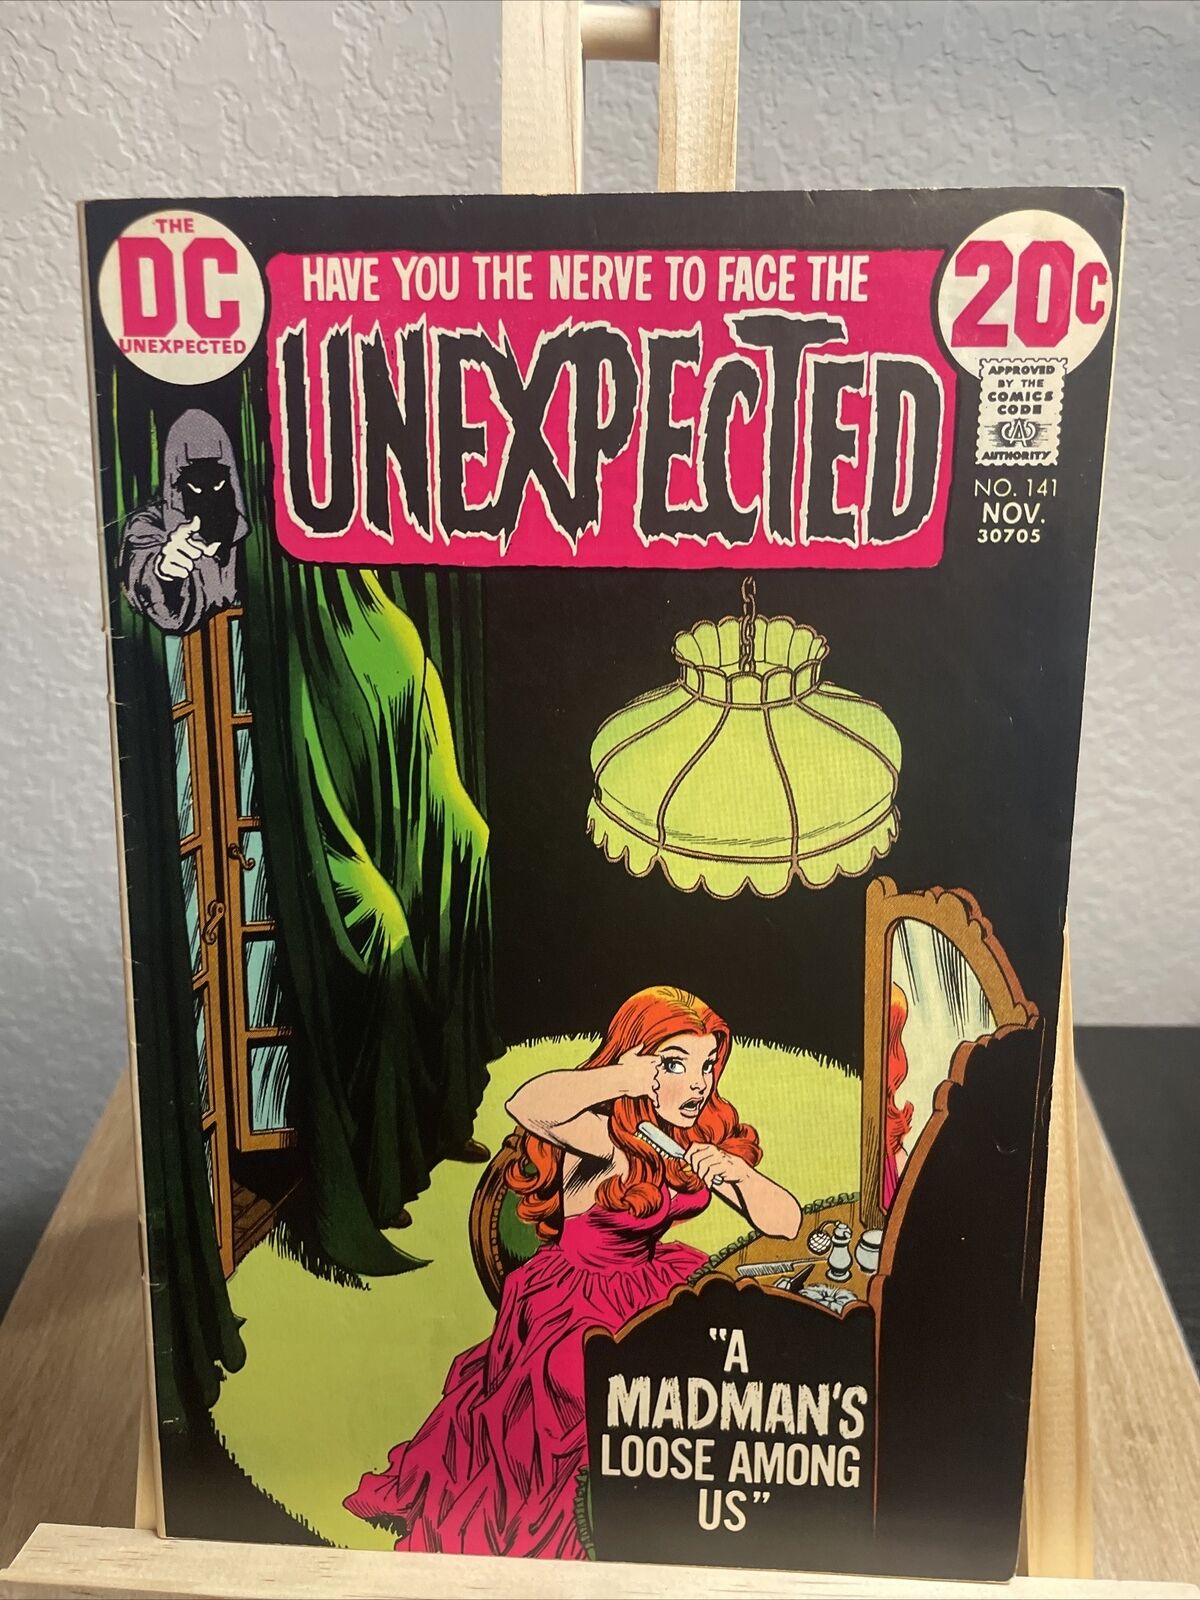 THE UNEXPECTED Vol. 17 # 141 November 1972 (DC Comics) VF